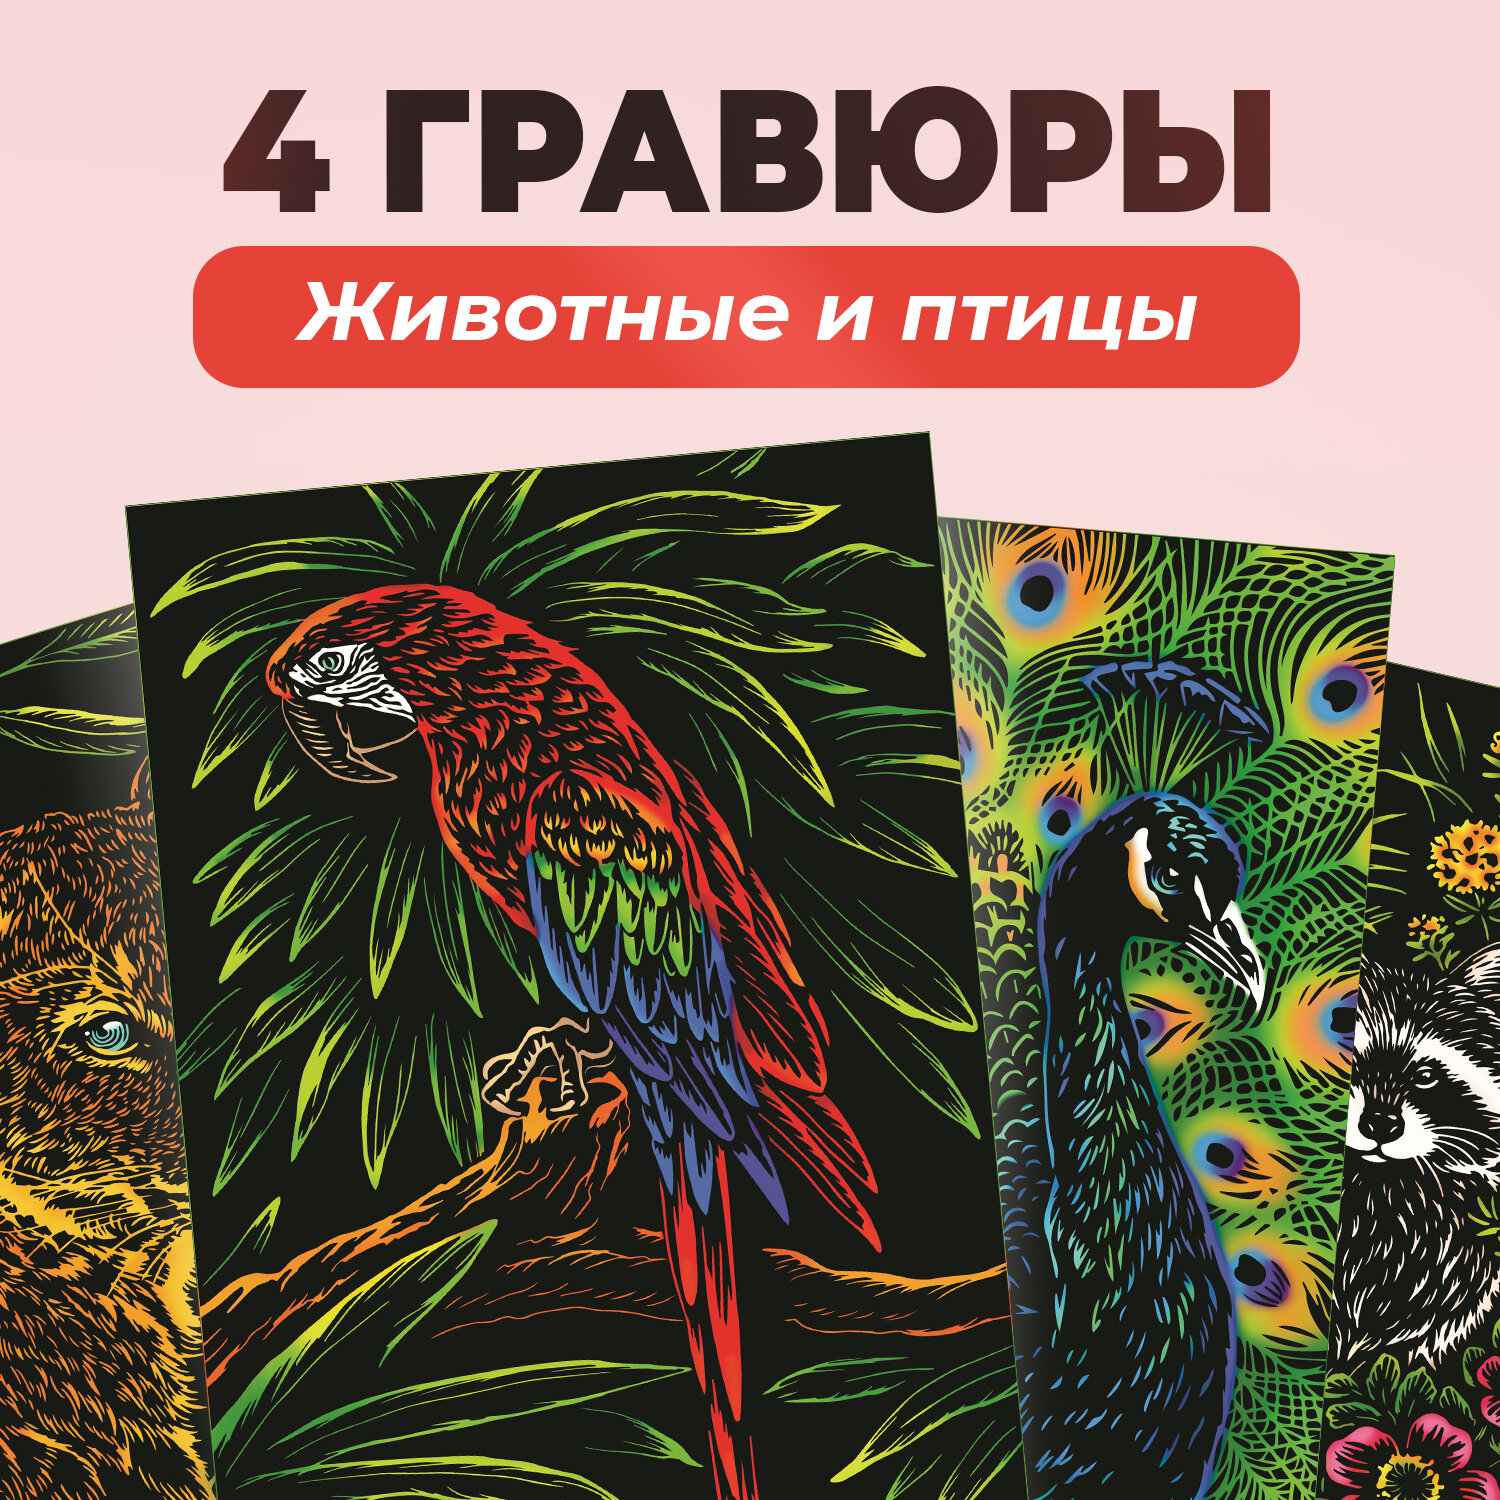 Набор для творчества цветная гравюра скретч картина LORI Животные и птицы, 18х24 см, 4 шт в комплекте, Им-381